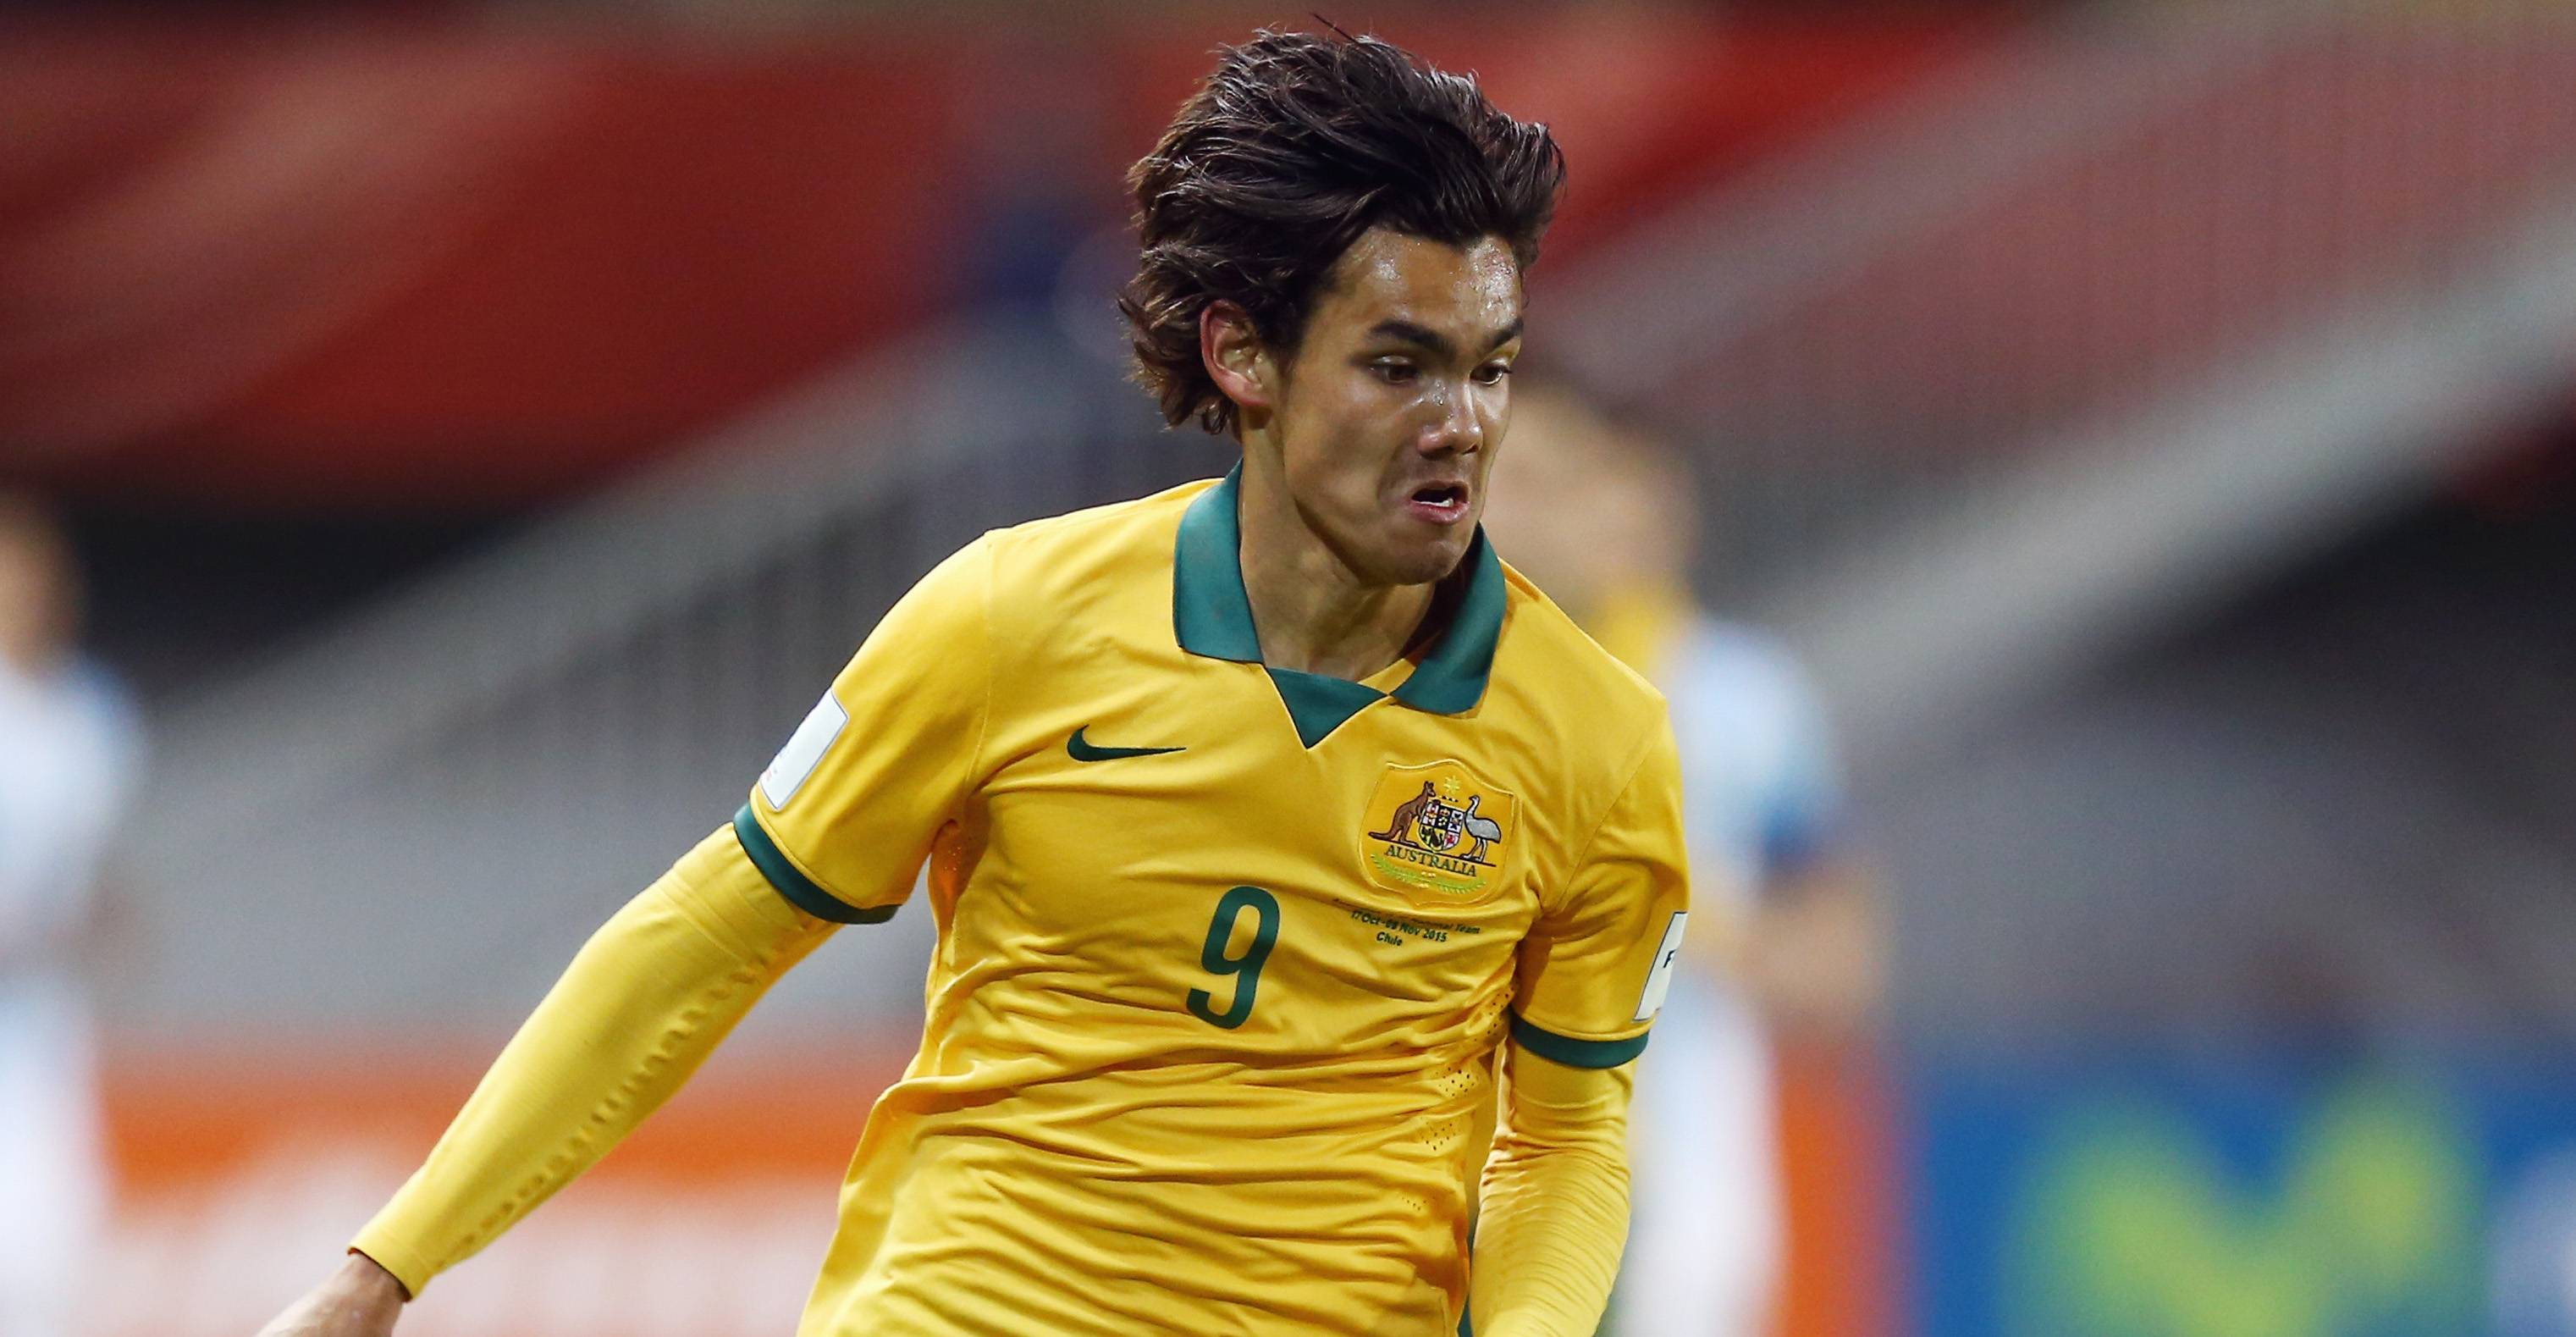 Former Australia U-17 striker Waring to go on trial with Cerezo Osaka